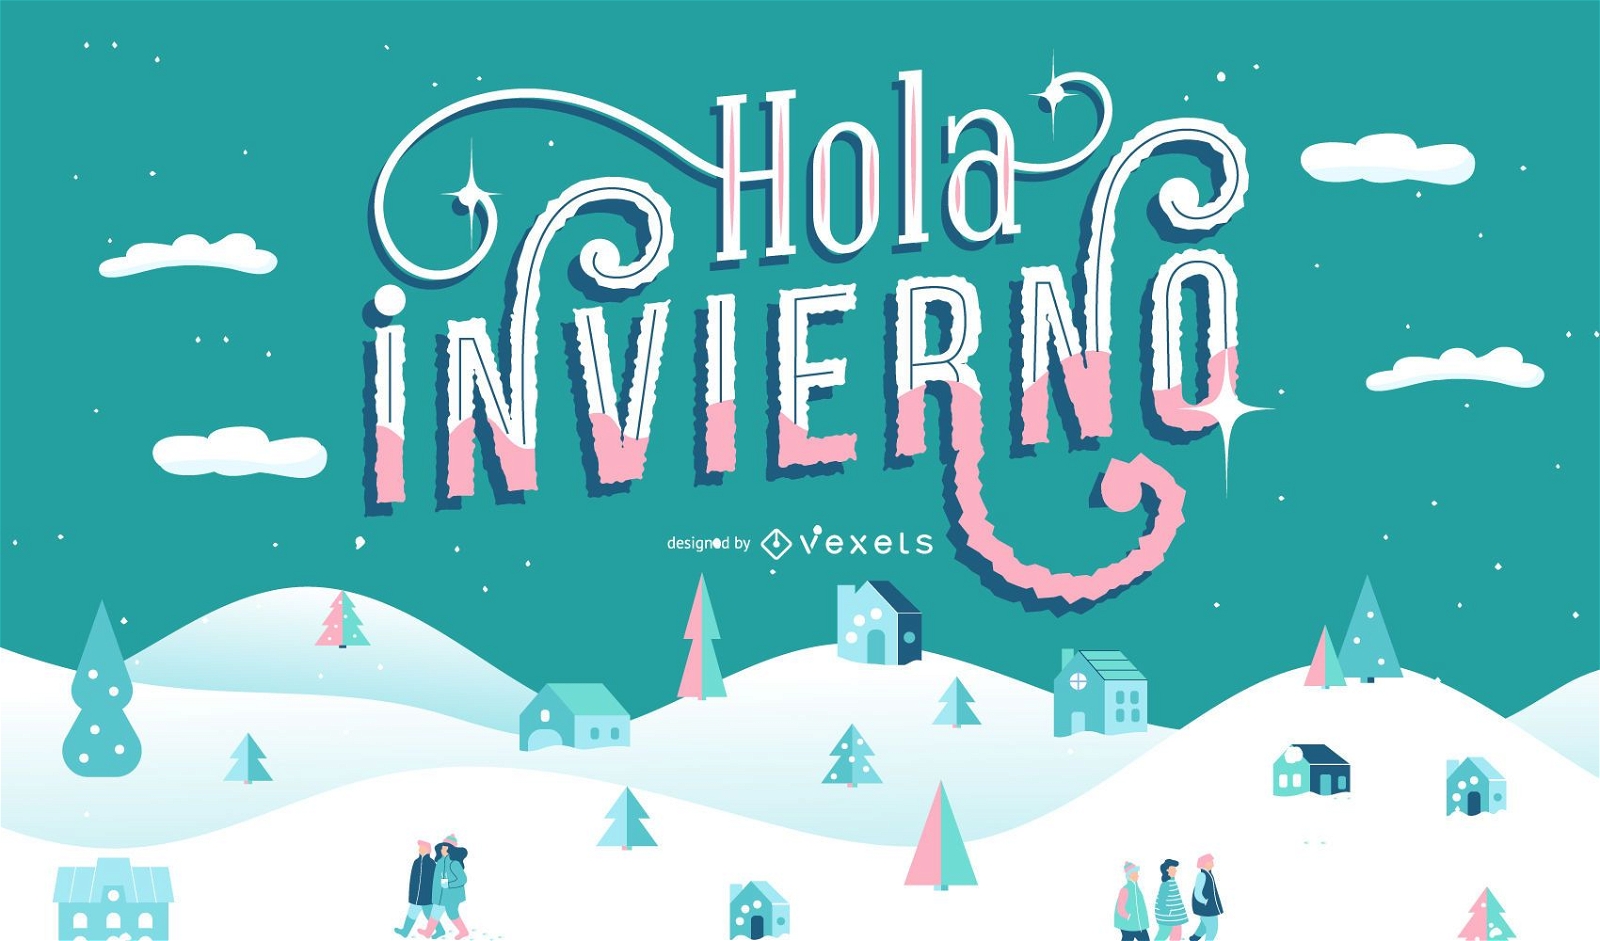 Olá letras espanholas de inverno